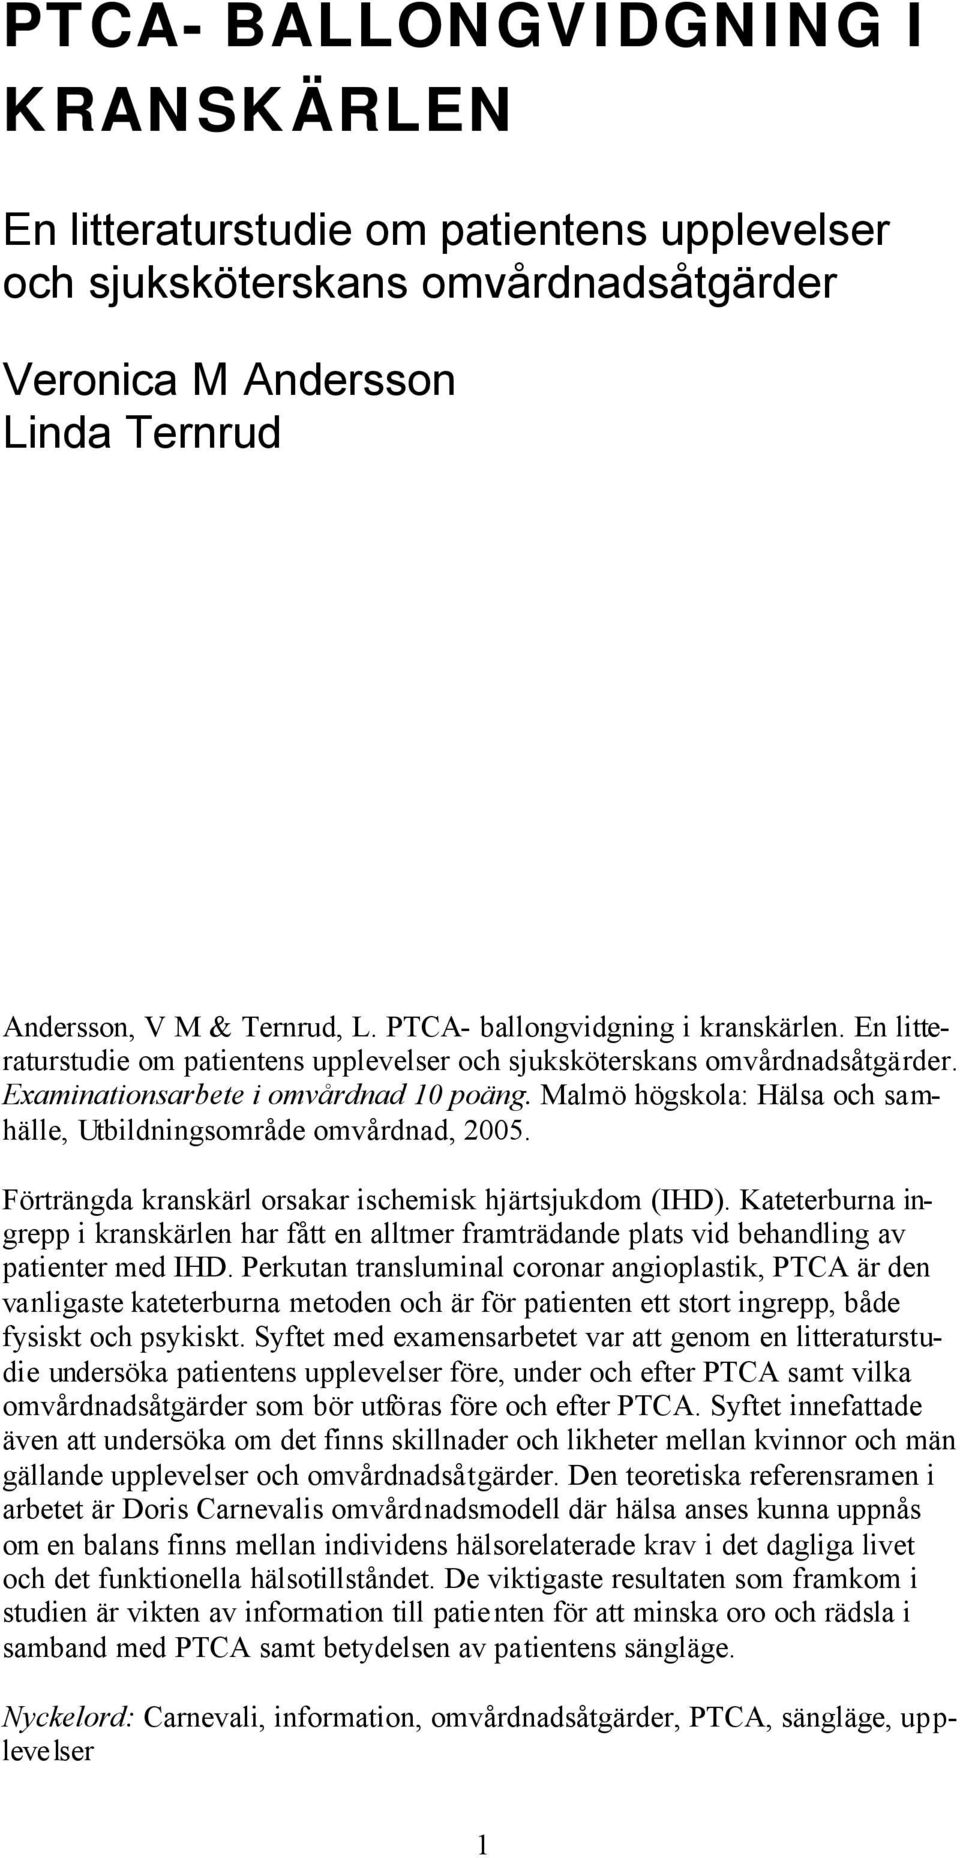 Malmö högskola: Hälsa och samhälle, Utbildningsområde omvårdnad, 2005. Förträngda kranskärl orsakar ischemisk hjärtsjukdom (IHD).